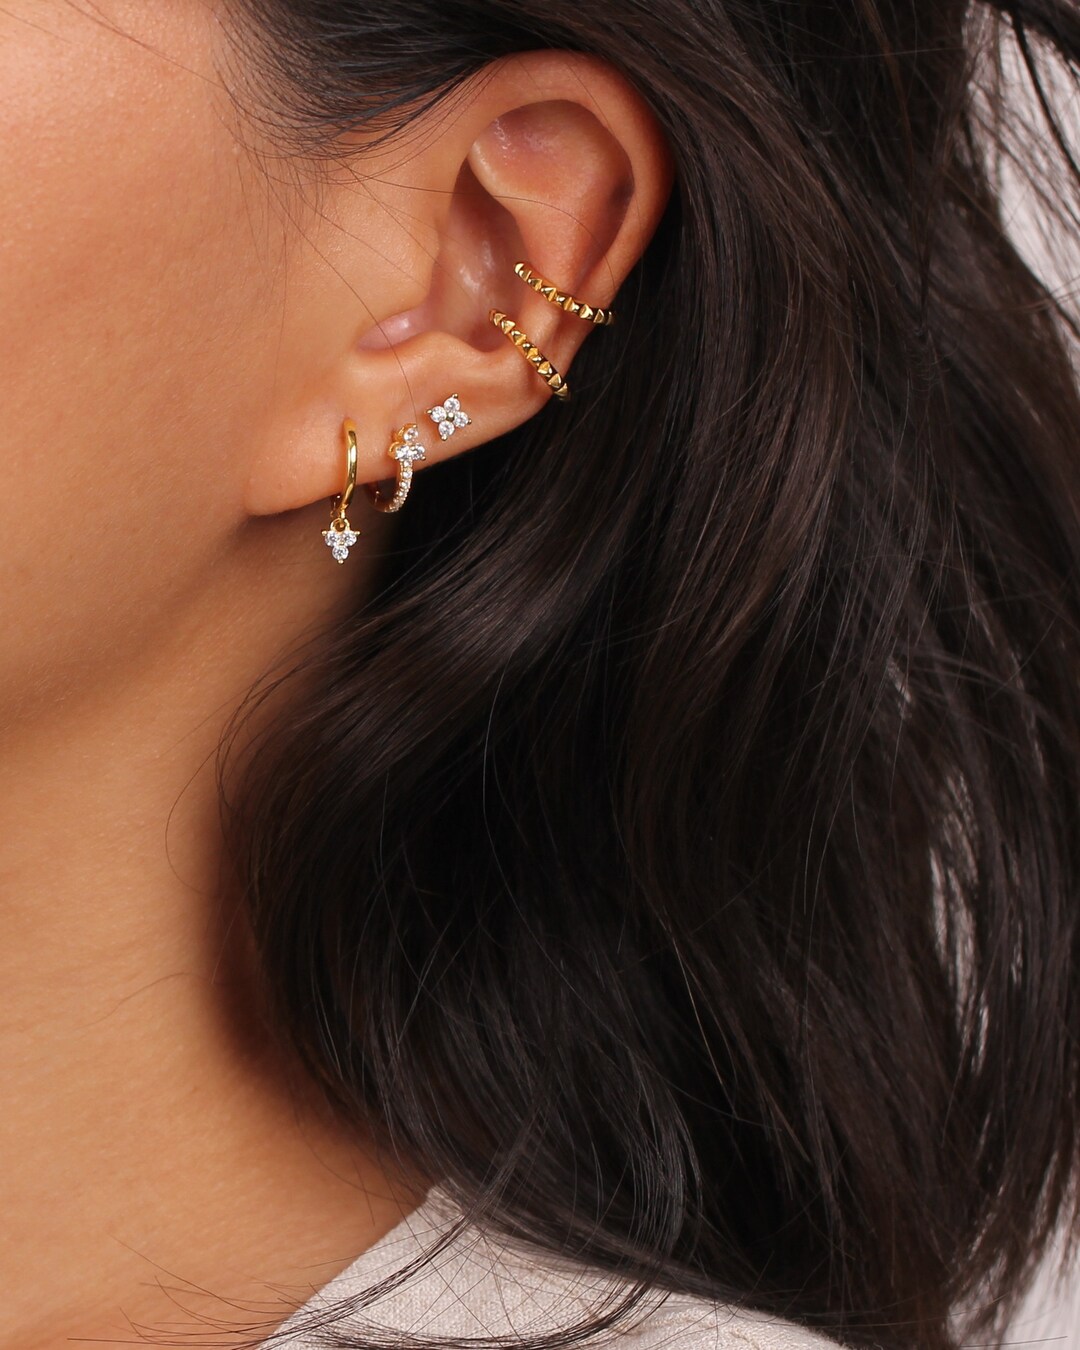 Charm Hoop Earrings Gold Huggie Earrings Stacking Hoops - Etsy